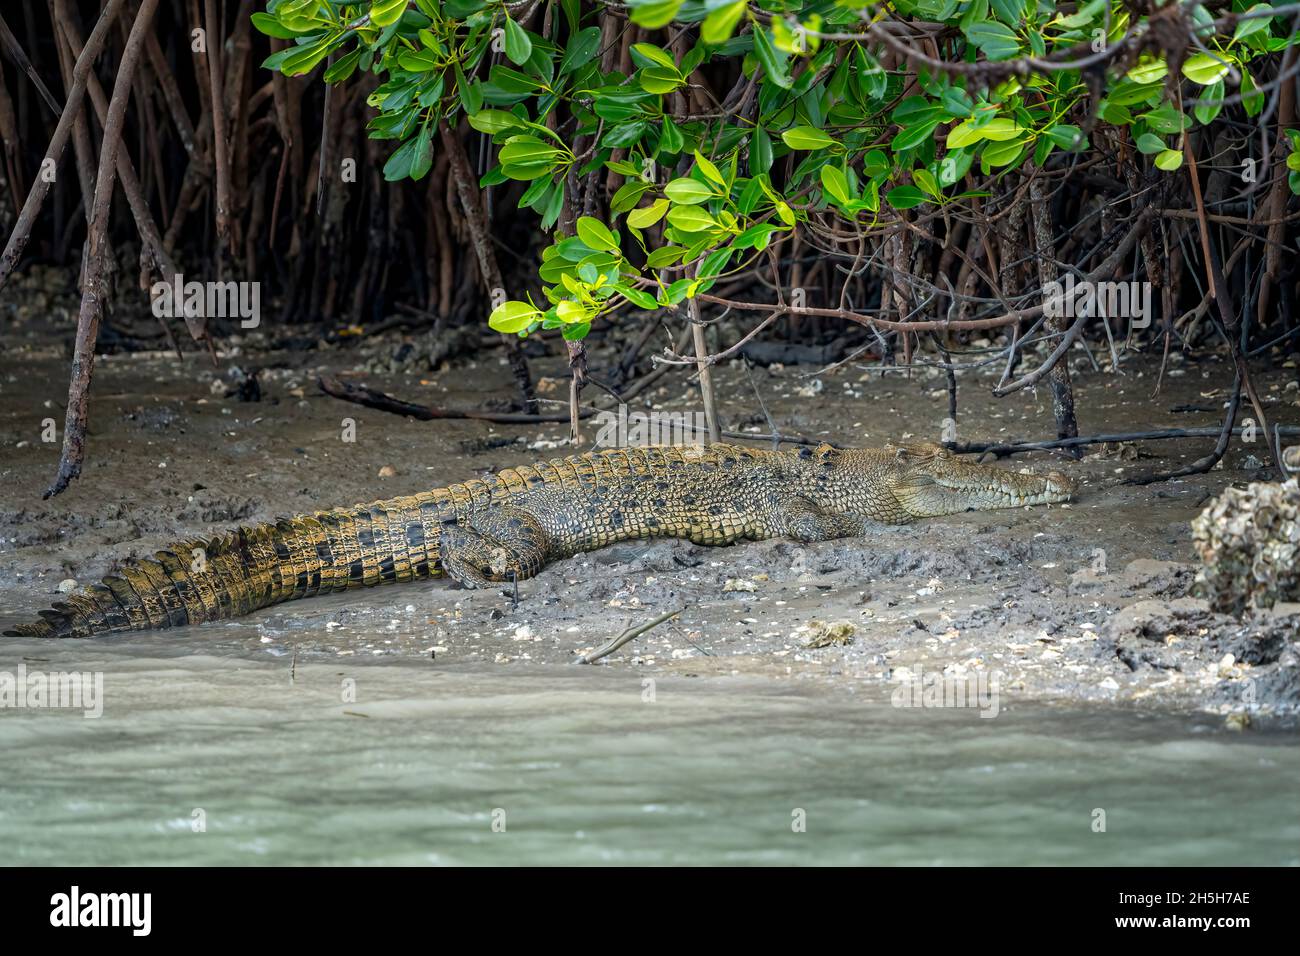 Cocodrilo de estuarios o cocodrilo de agua salada (Crocodylus porosus) tomando sol en la orilla fangosa de los manglares en la marea baja. Norte de Queensland, Australia Foto de stock